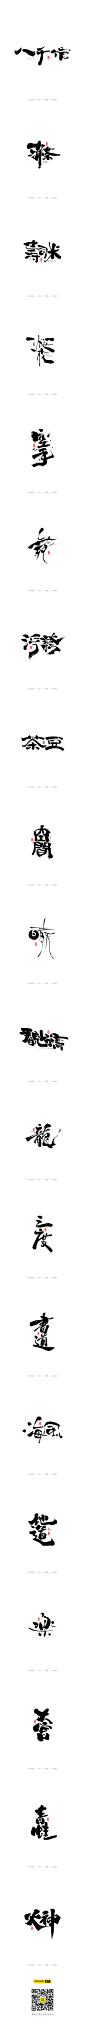 十月日式和风手写字体-字体传奇网-中国首个字体品牌设计师交流网